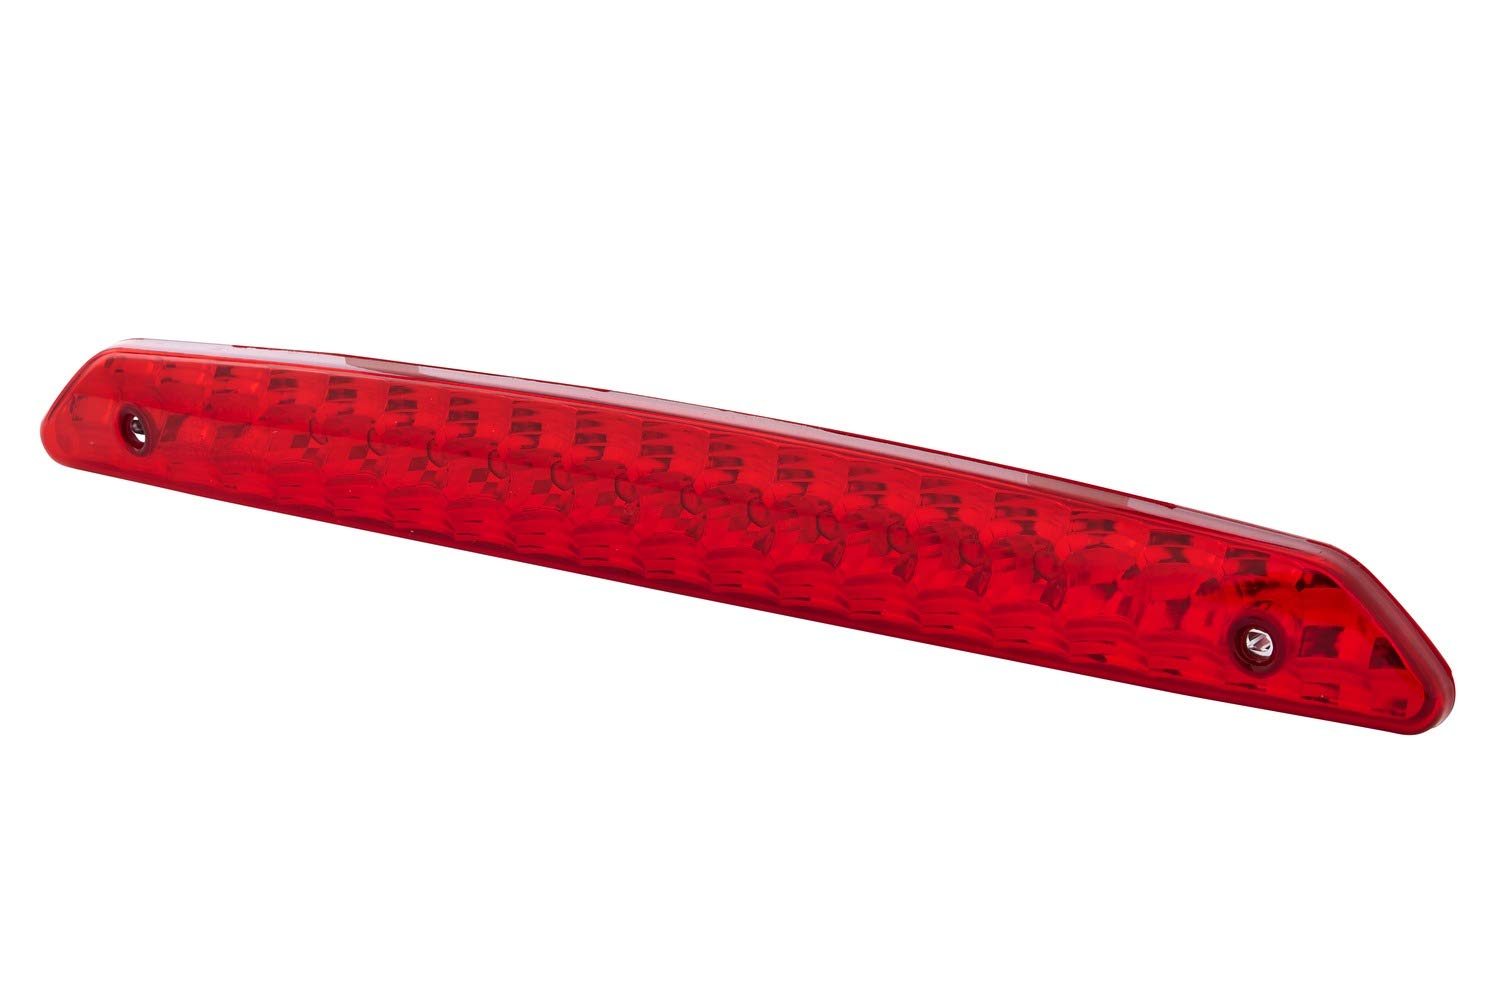 HELLA - Zusatzbremsleuchte - LED - 24/12V - Anbau/aufklebbar - Lichtscheibenfarbe: rot - LED-Lichtfarbe: rot - Kabel: 200mm - Stecker: offene Kabelenden - hinten - 2DA 343 800-047